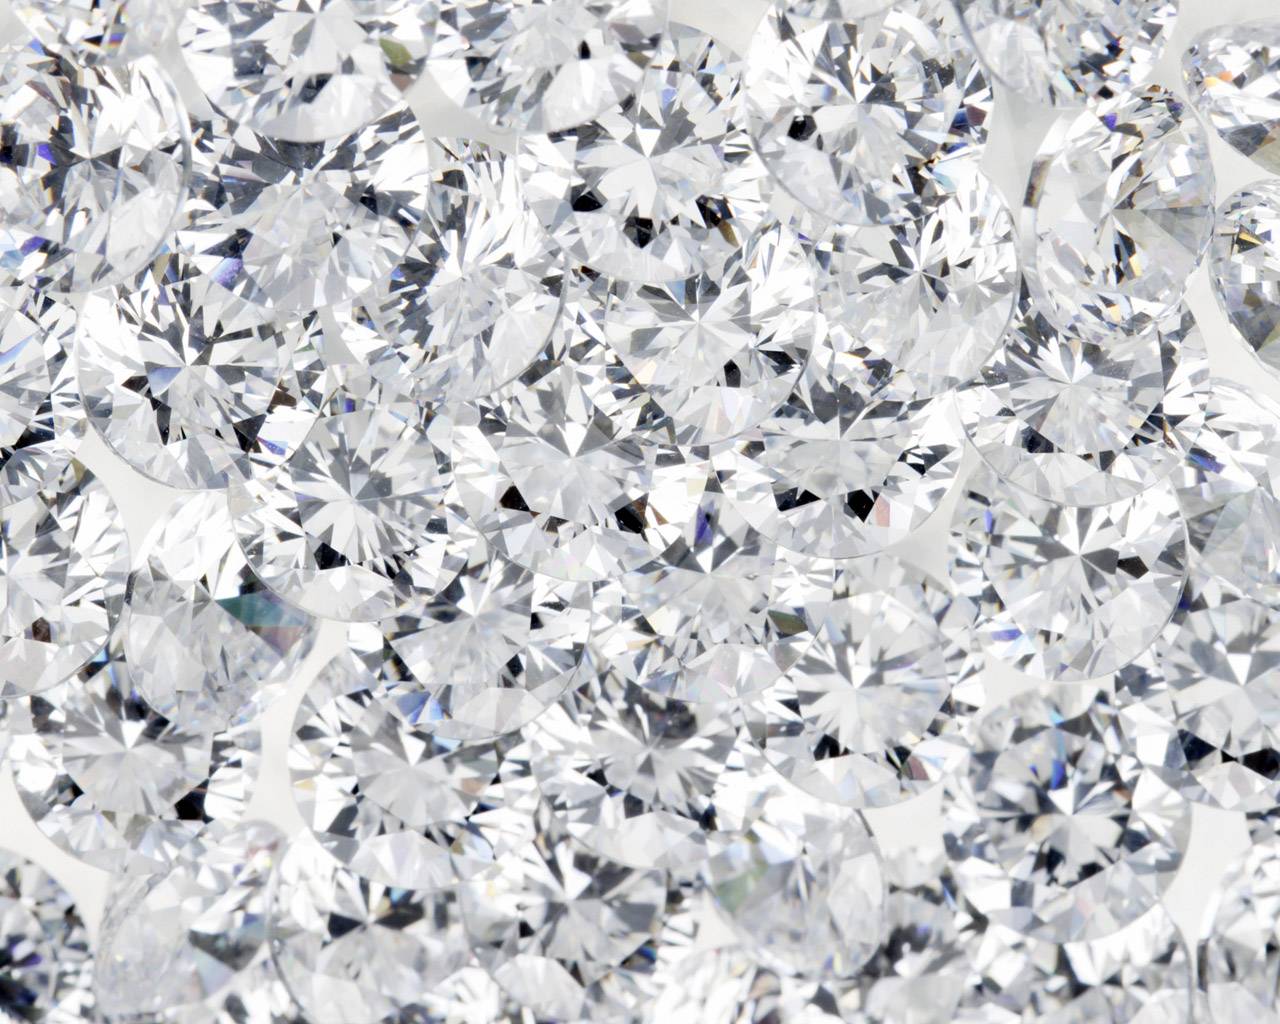 A close up of diamonds on the ground - Diamond